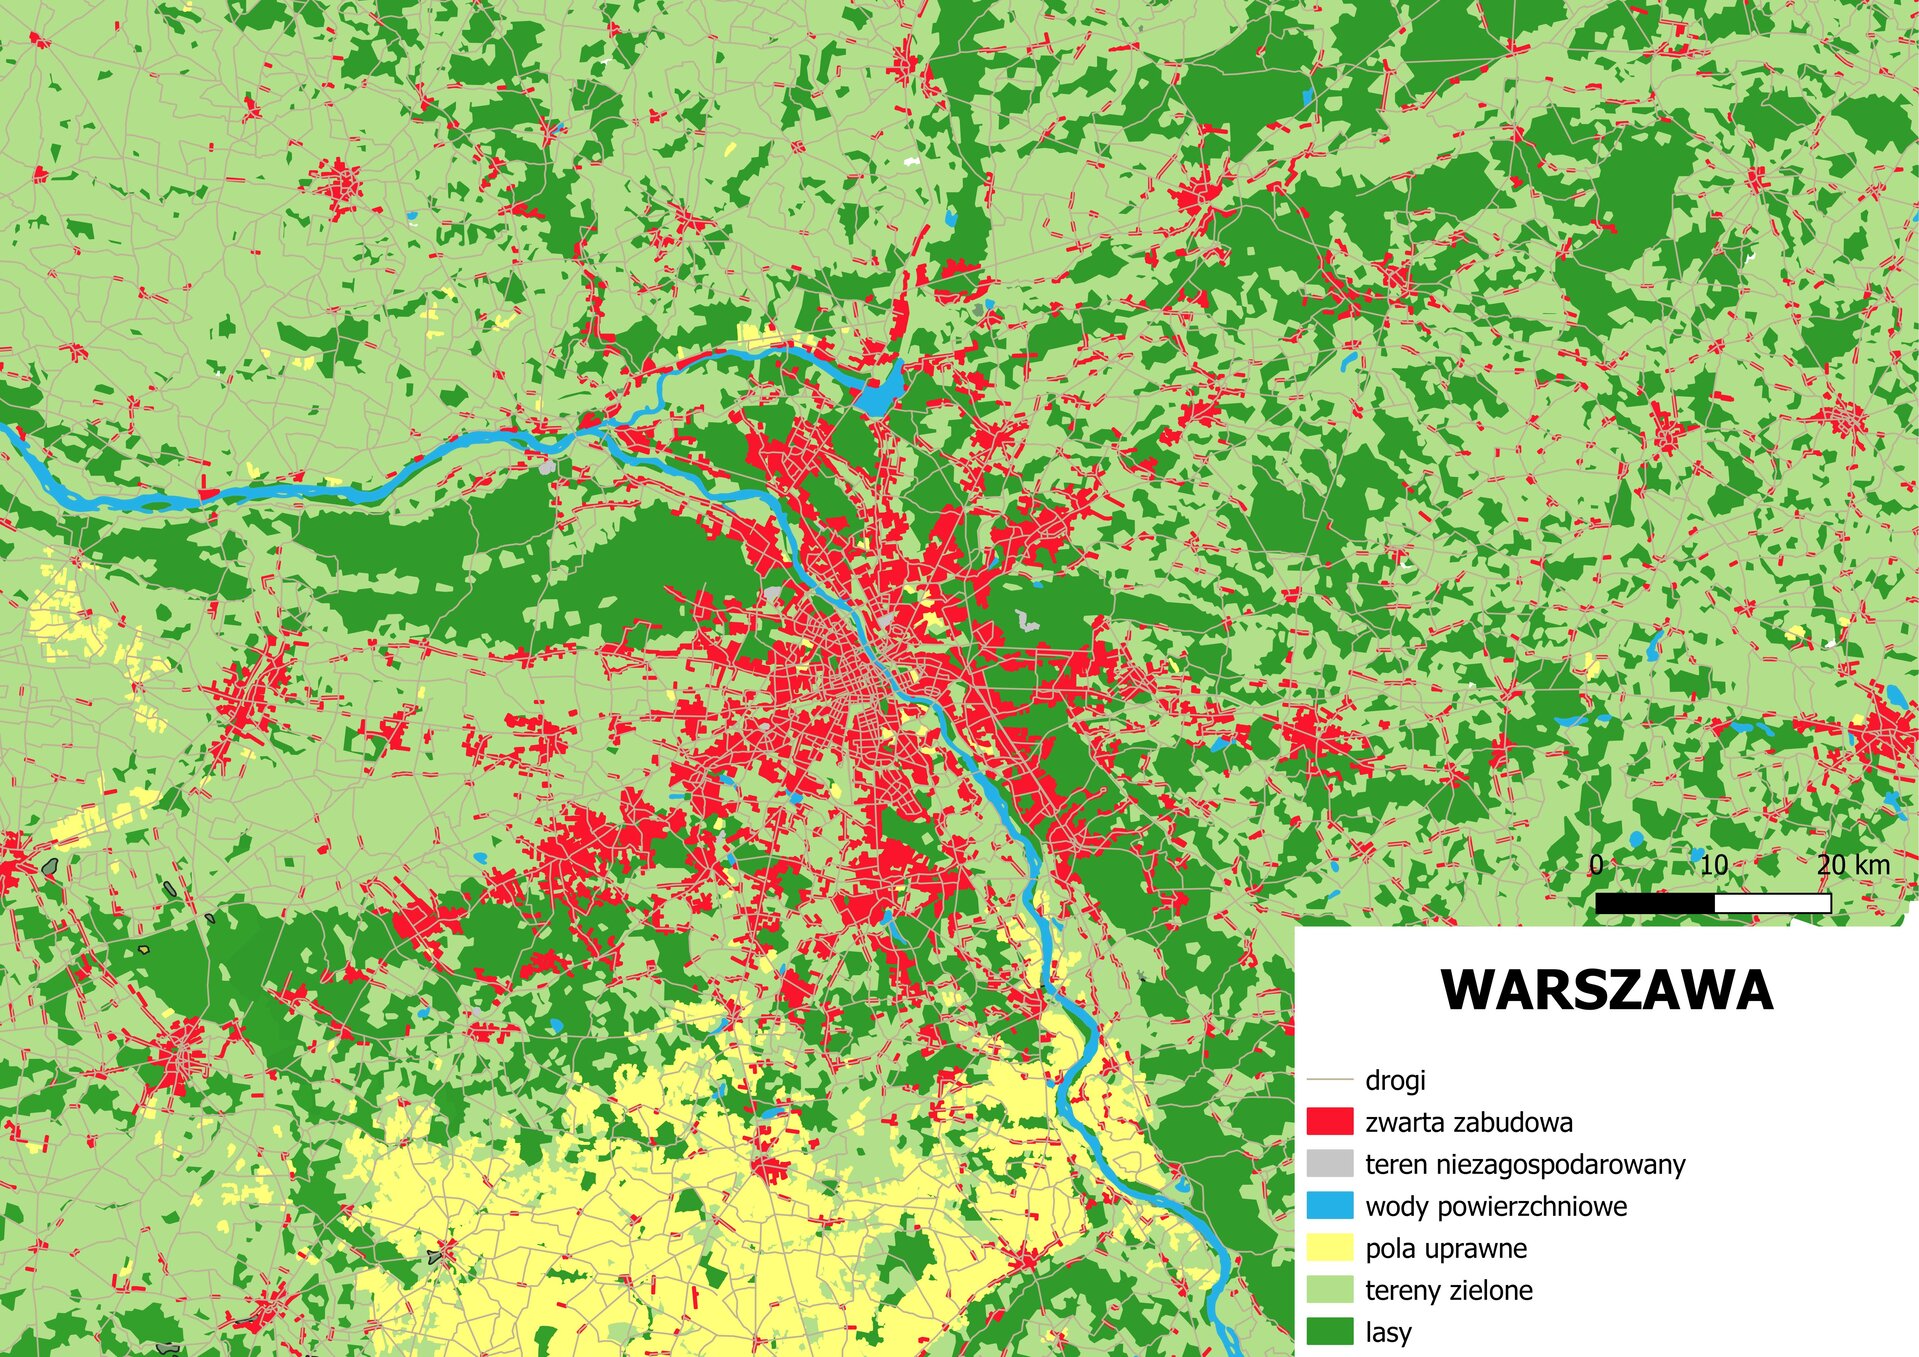 Ilustracja przedstawia mapę Warszawy i okolic. Miasto położone jest nad Wisłą. Tam dominuje zwarta zabudowa. Poza centrum zwarta zabudowa występuje głównie przy kilku odchodzących drogach, jest jej stopniowo mniej. Są to mniejsze miejscowości. Wokół dominują tereny zielone oraz lasy, w południowo‑zachodniej części dominują pola uprawne.